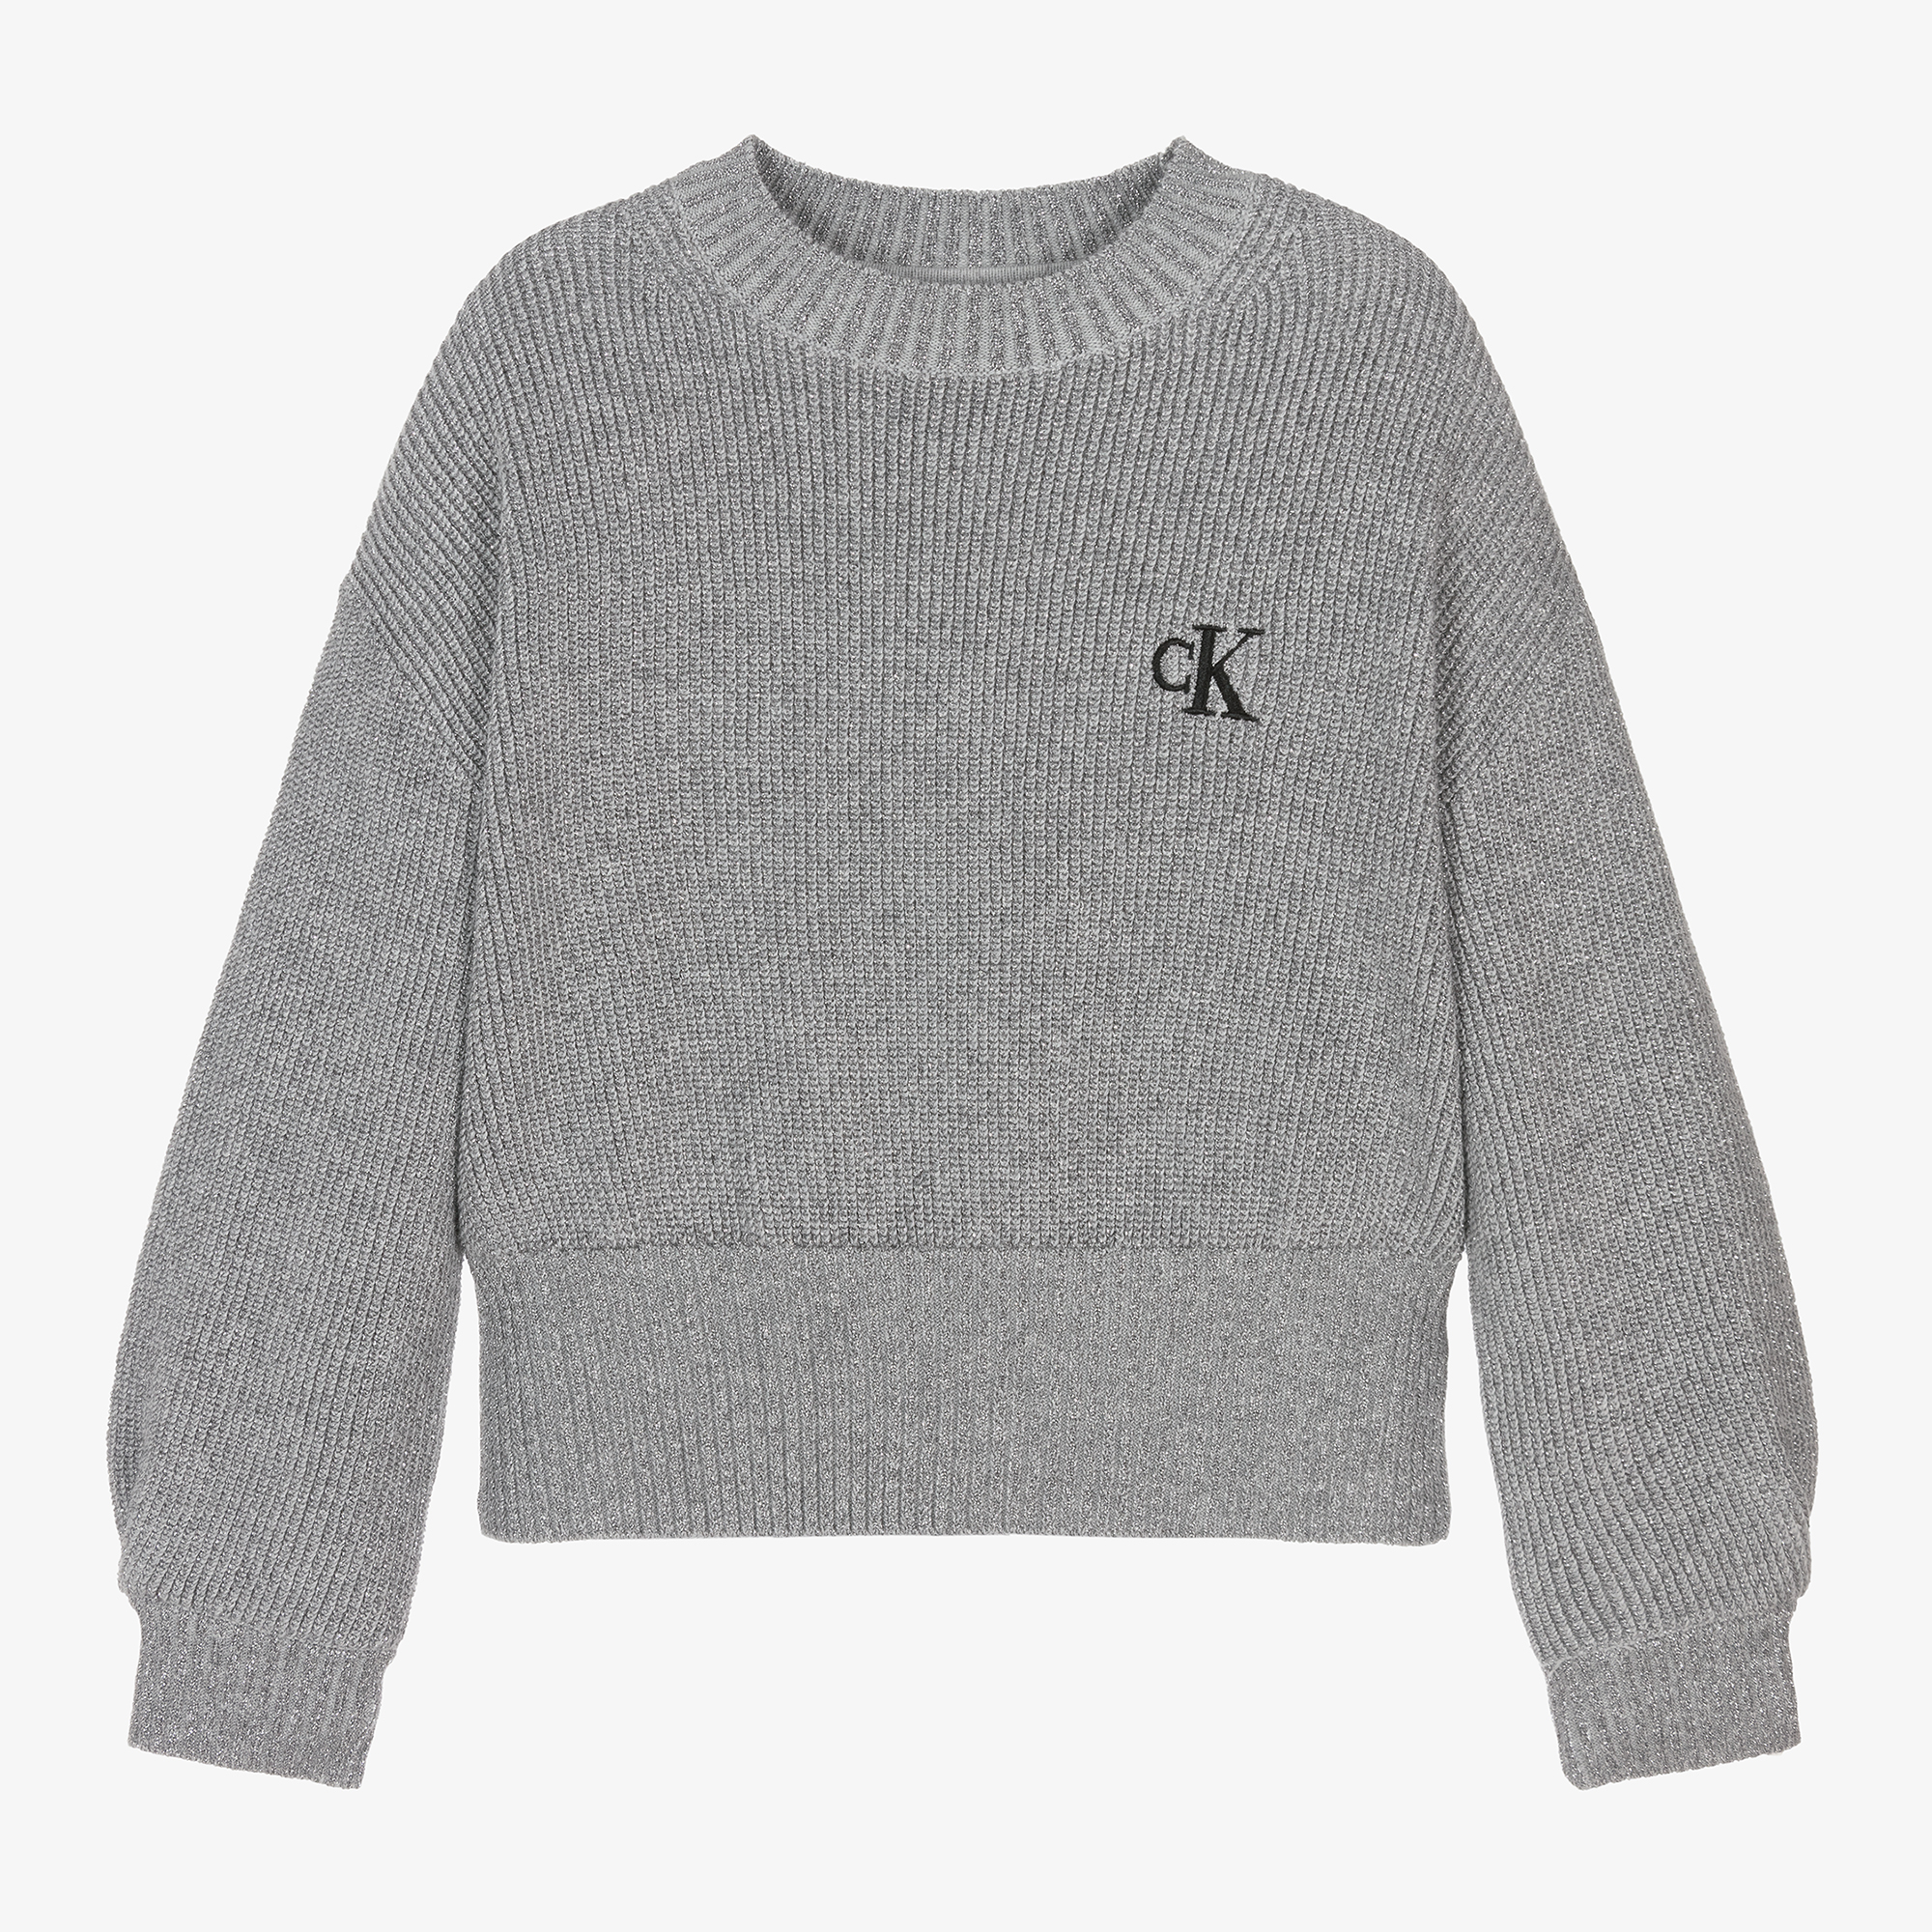 Calvin Klein Girls Grey Sparkly Knitted Sweater